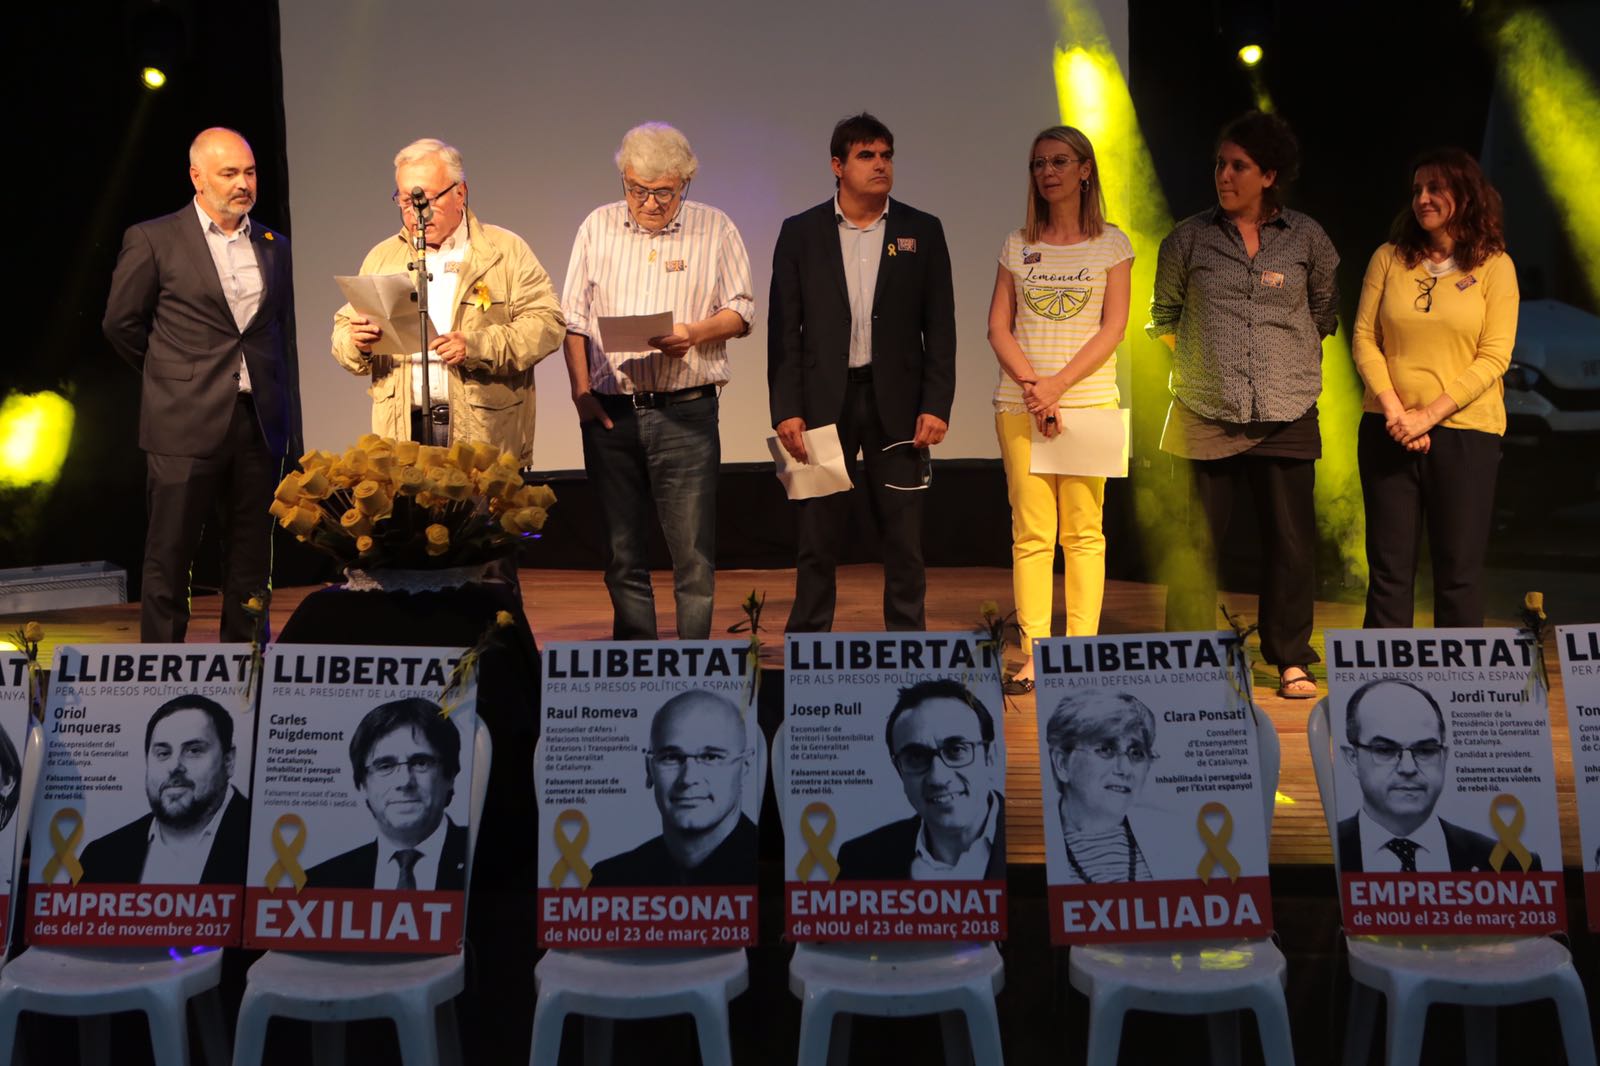 Entitats i partits sobiranistes han llegit un manifest conjunt. FOTO: Artur Ribera